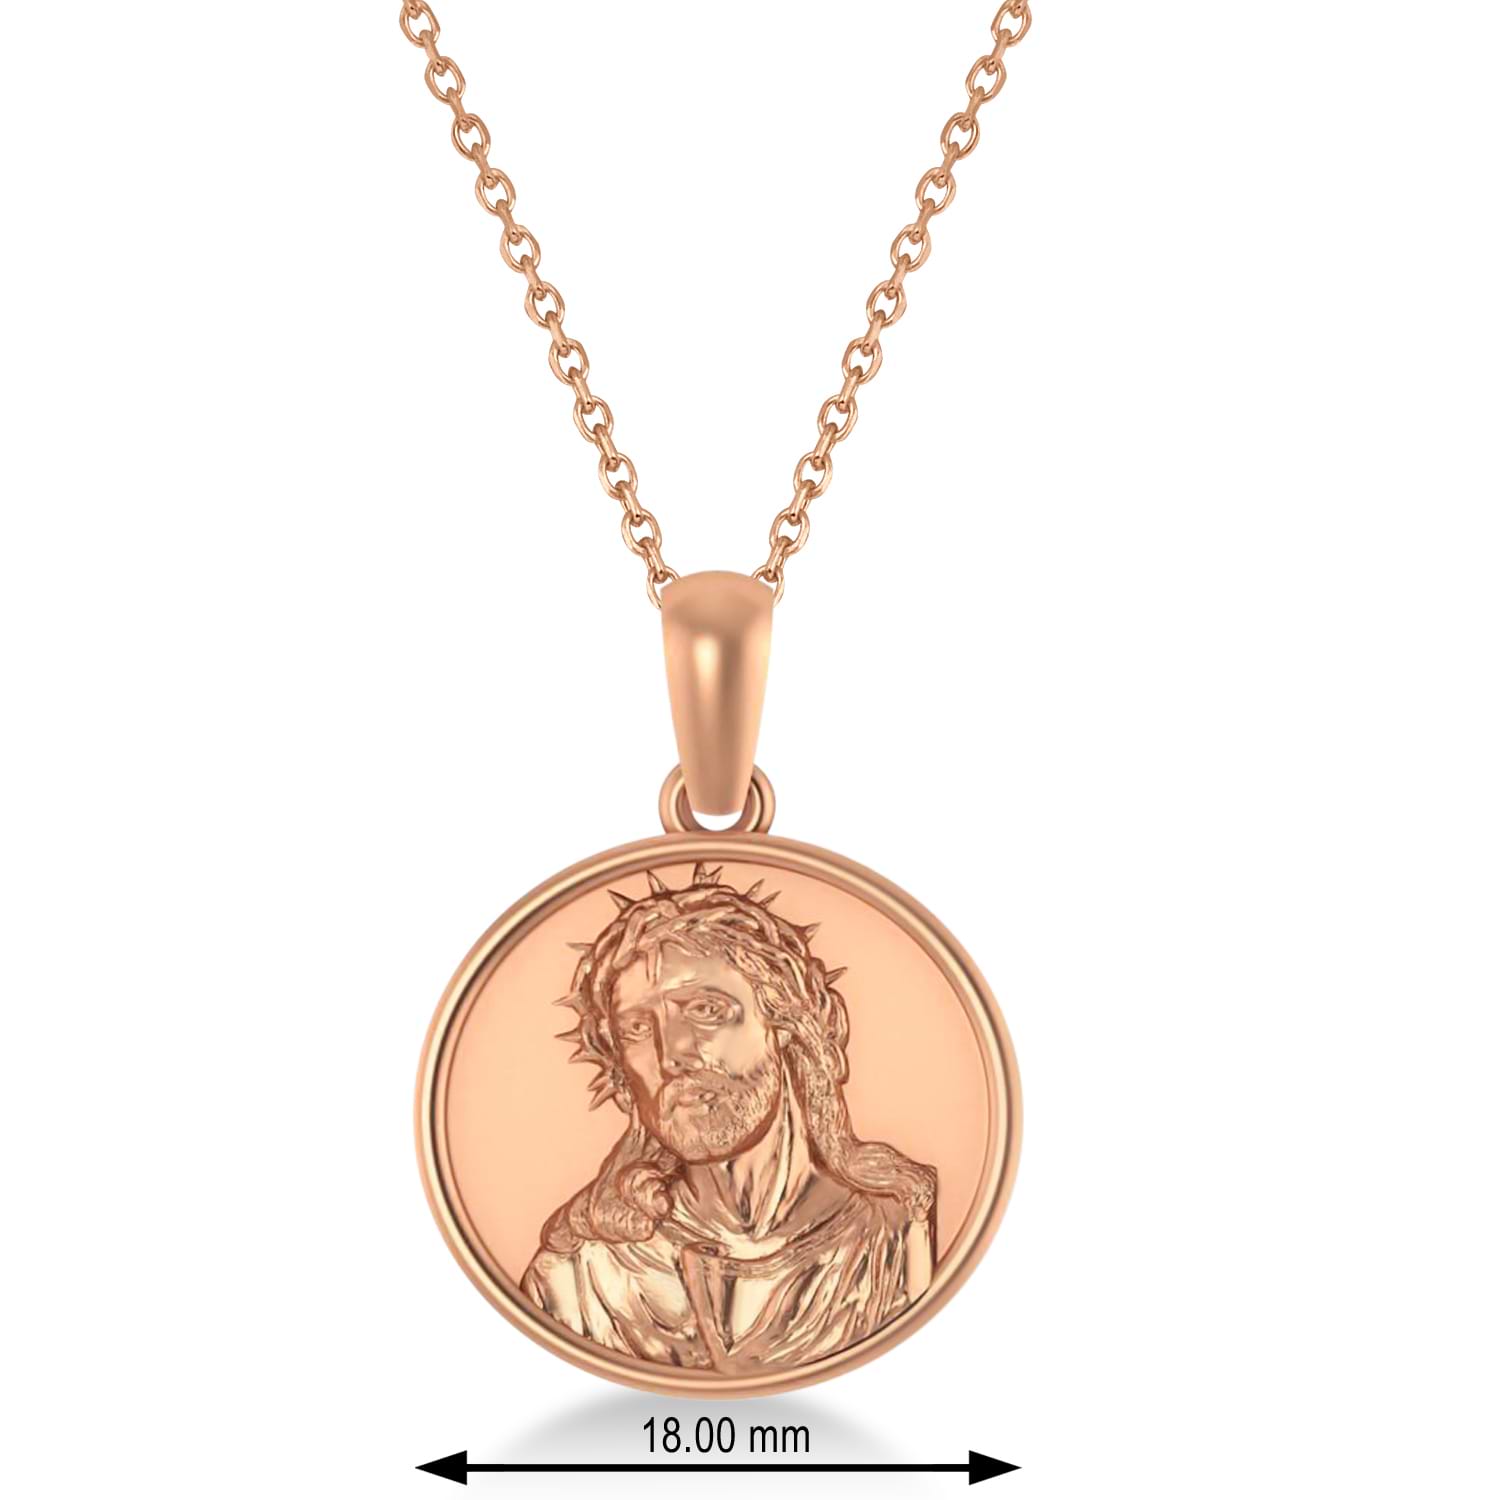 Jesus Christ Medal Pendant Necklace 14k Rose Gold